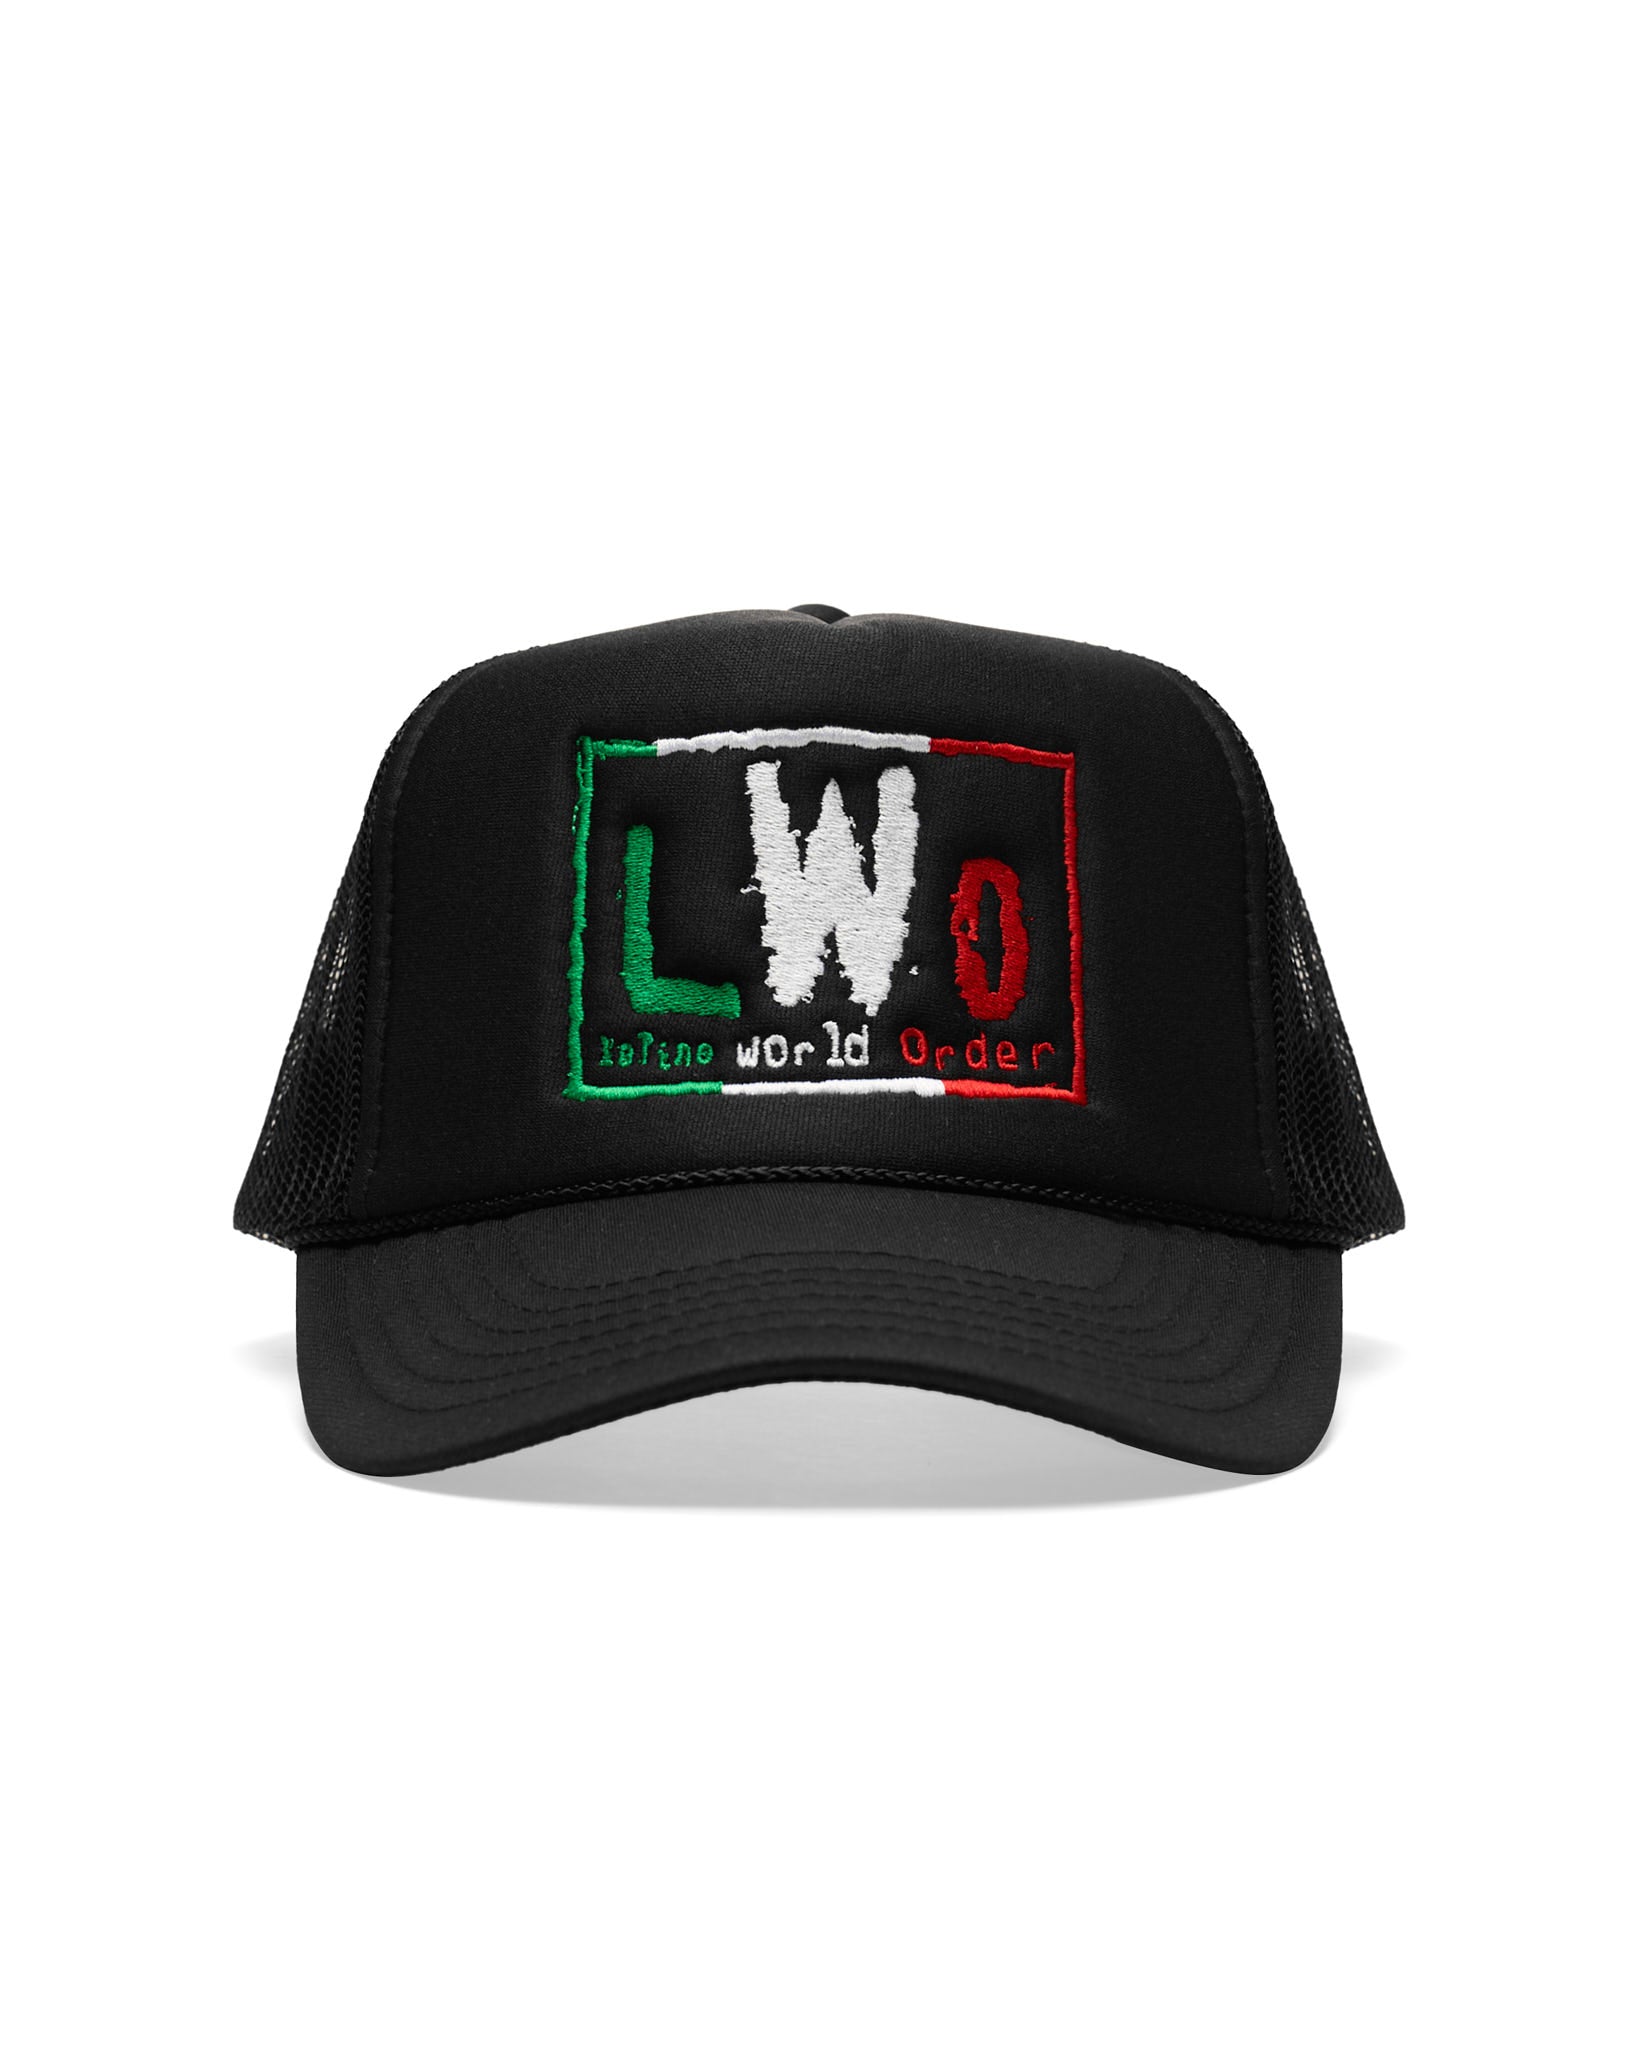 LWO Black Trucker Hat